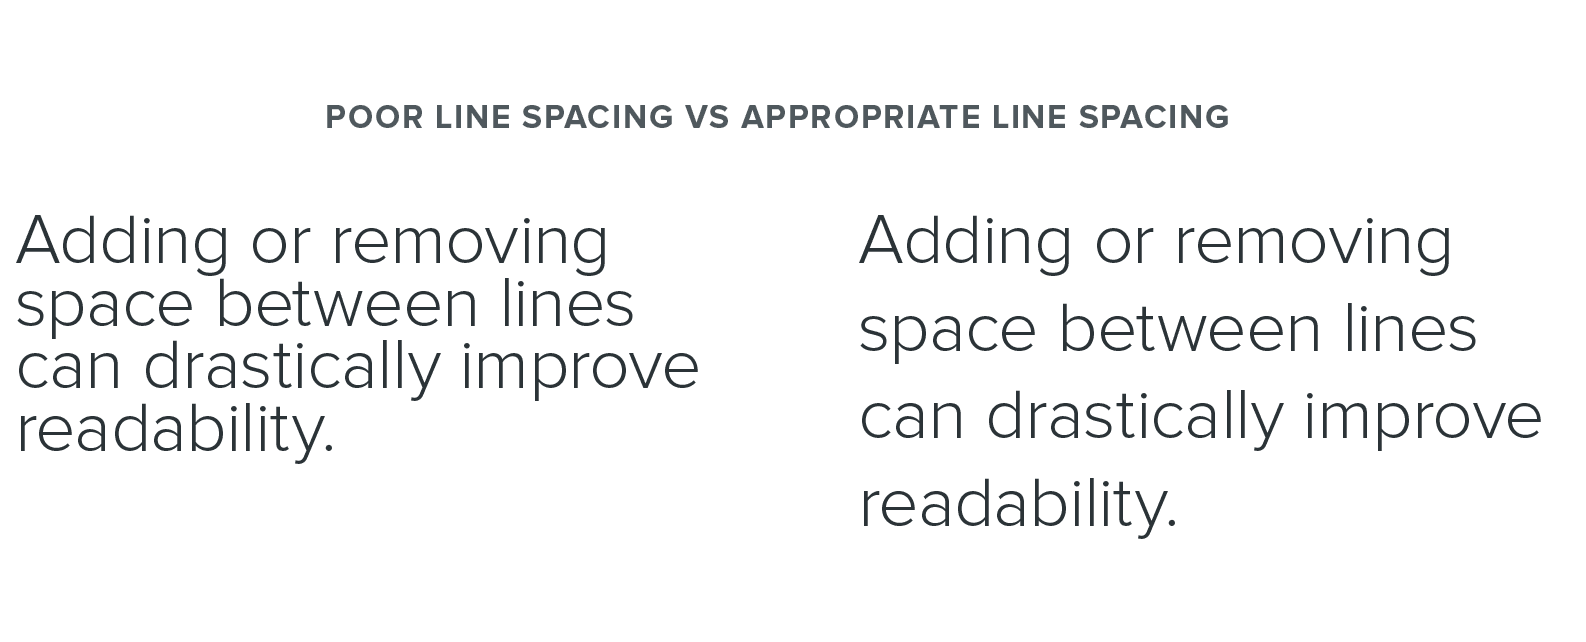 Poor line spacing vs appropriate line spacing